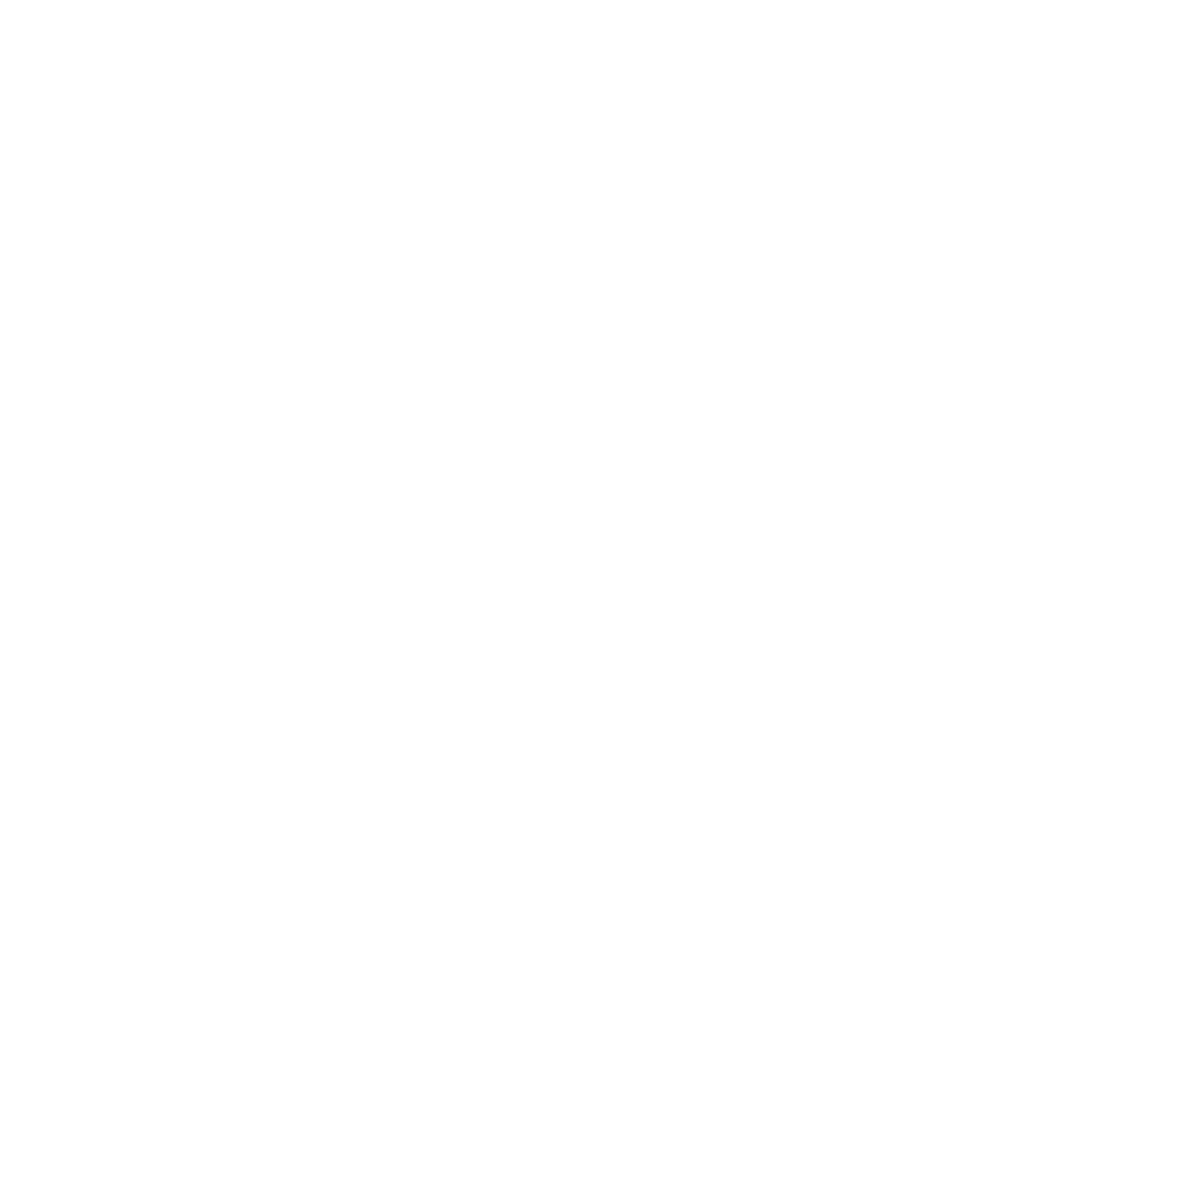 Pictogramme d'une tour d'ordinateur avec 2 ordinateurs autour représentant le sur-mesure